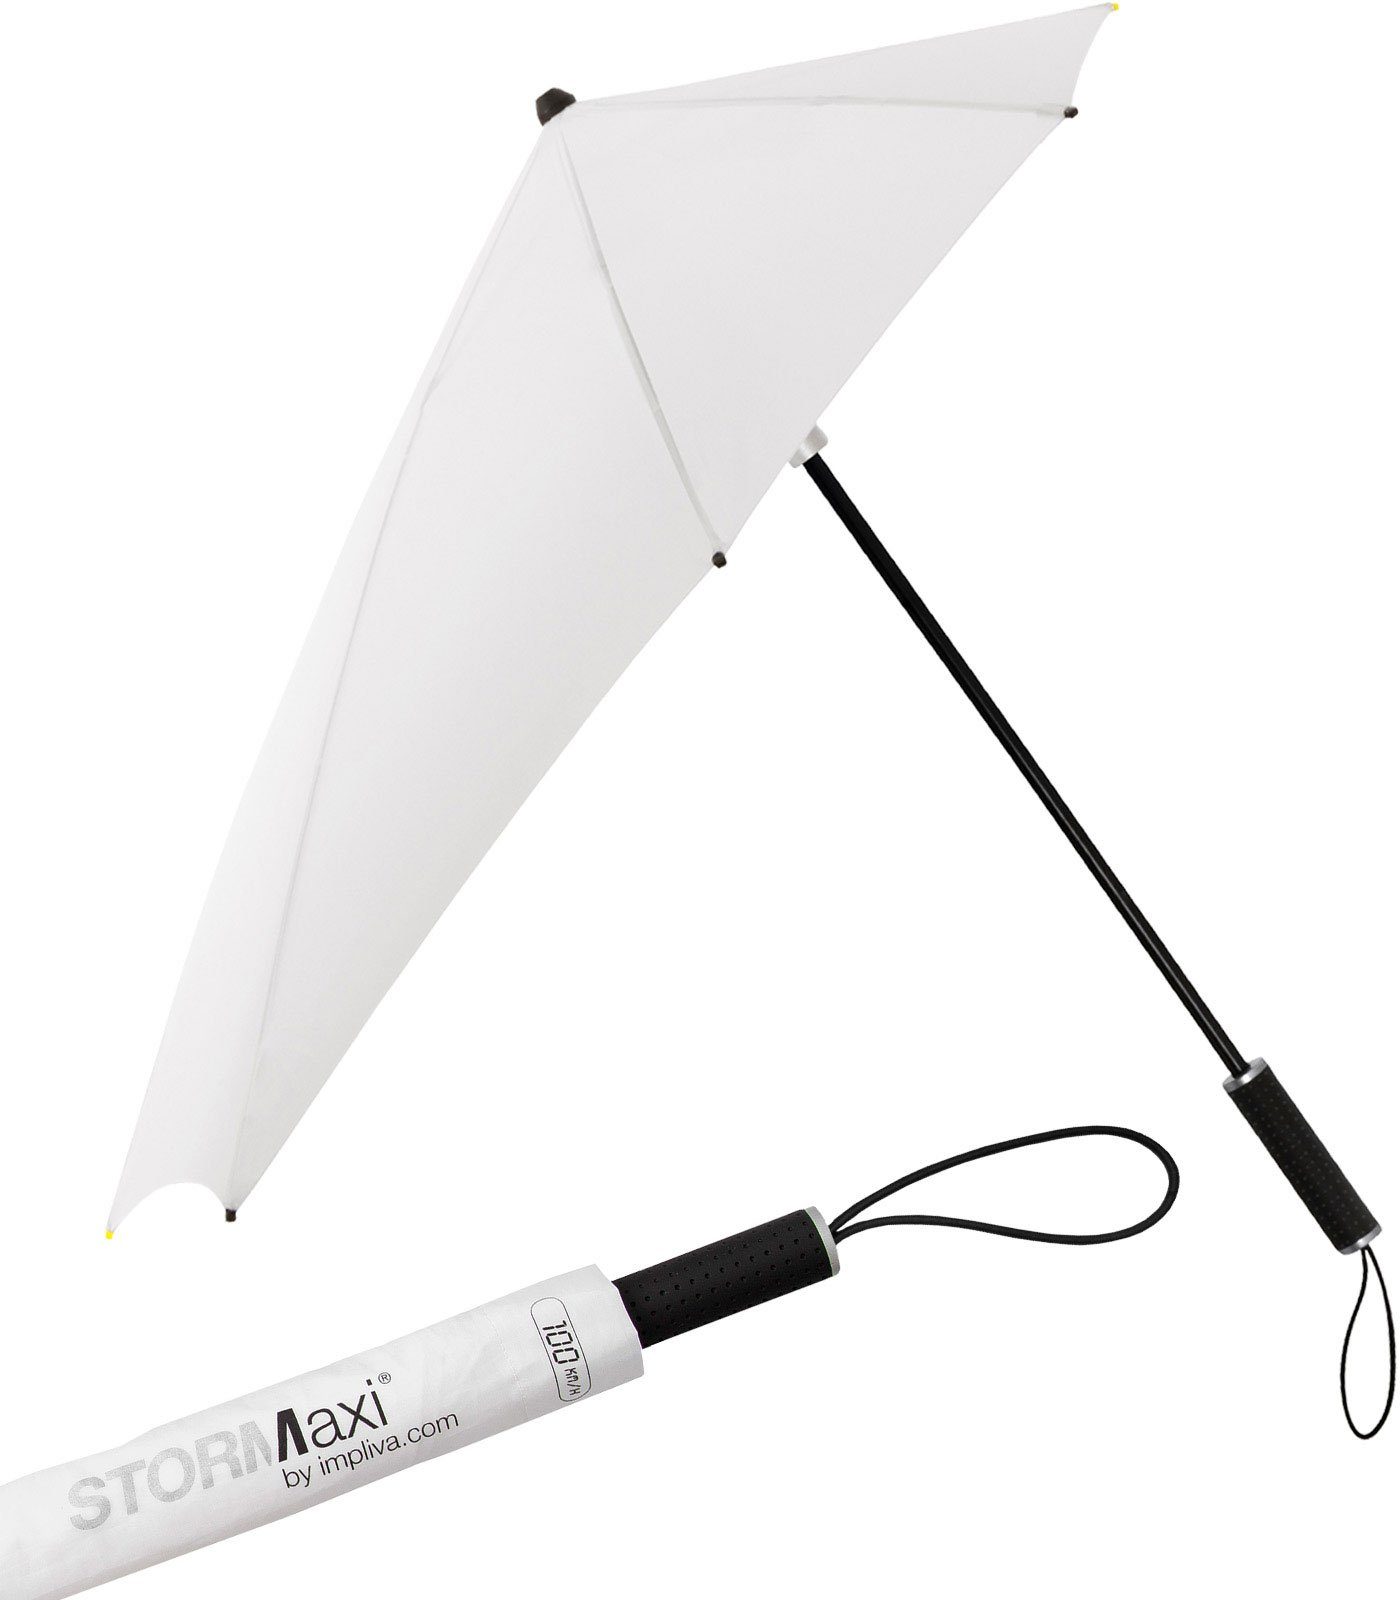 Impliva Stockregenschirm STORMaxi Sturmschirm aerodynamischer Regenschirm, durch seine besondere Form dreht sich der Schirm in den Wind, hält bis zu 100 km/h aus